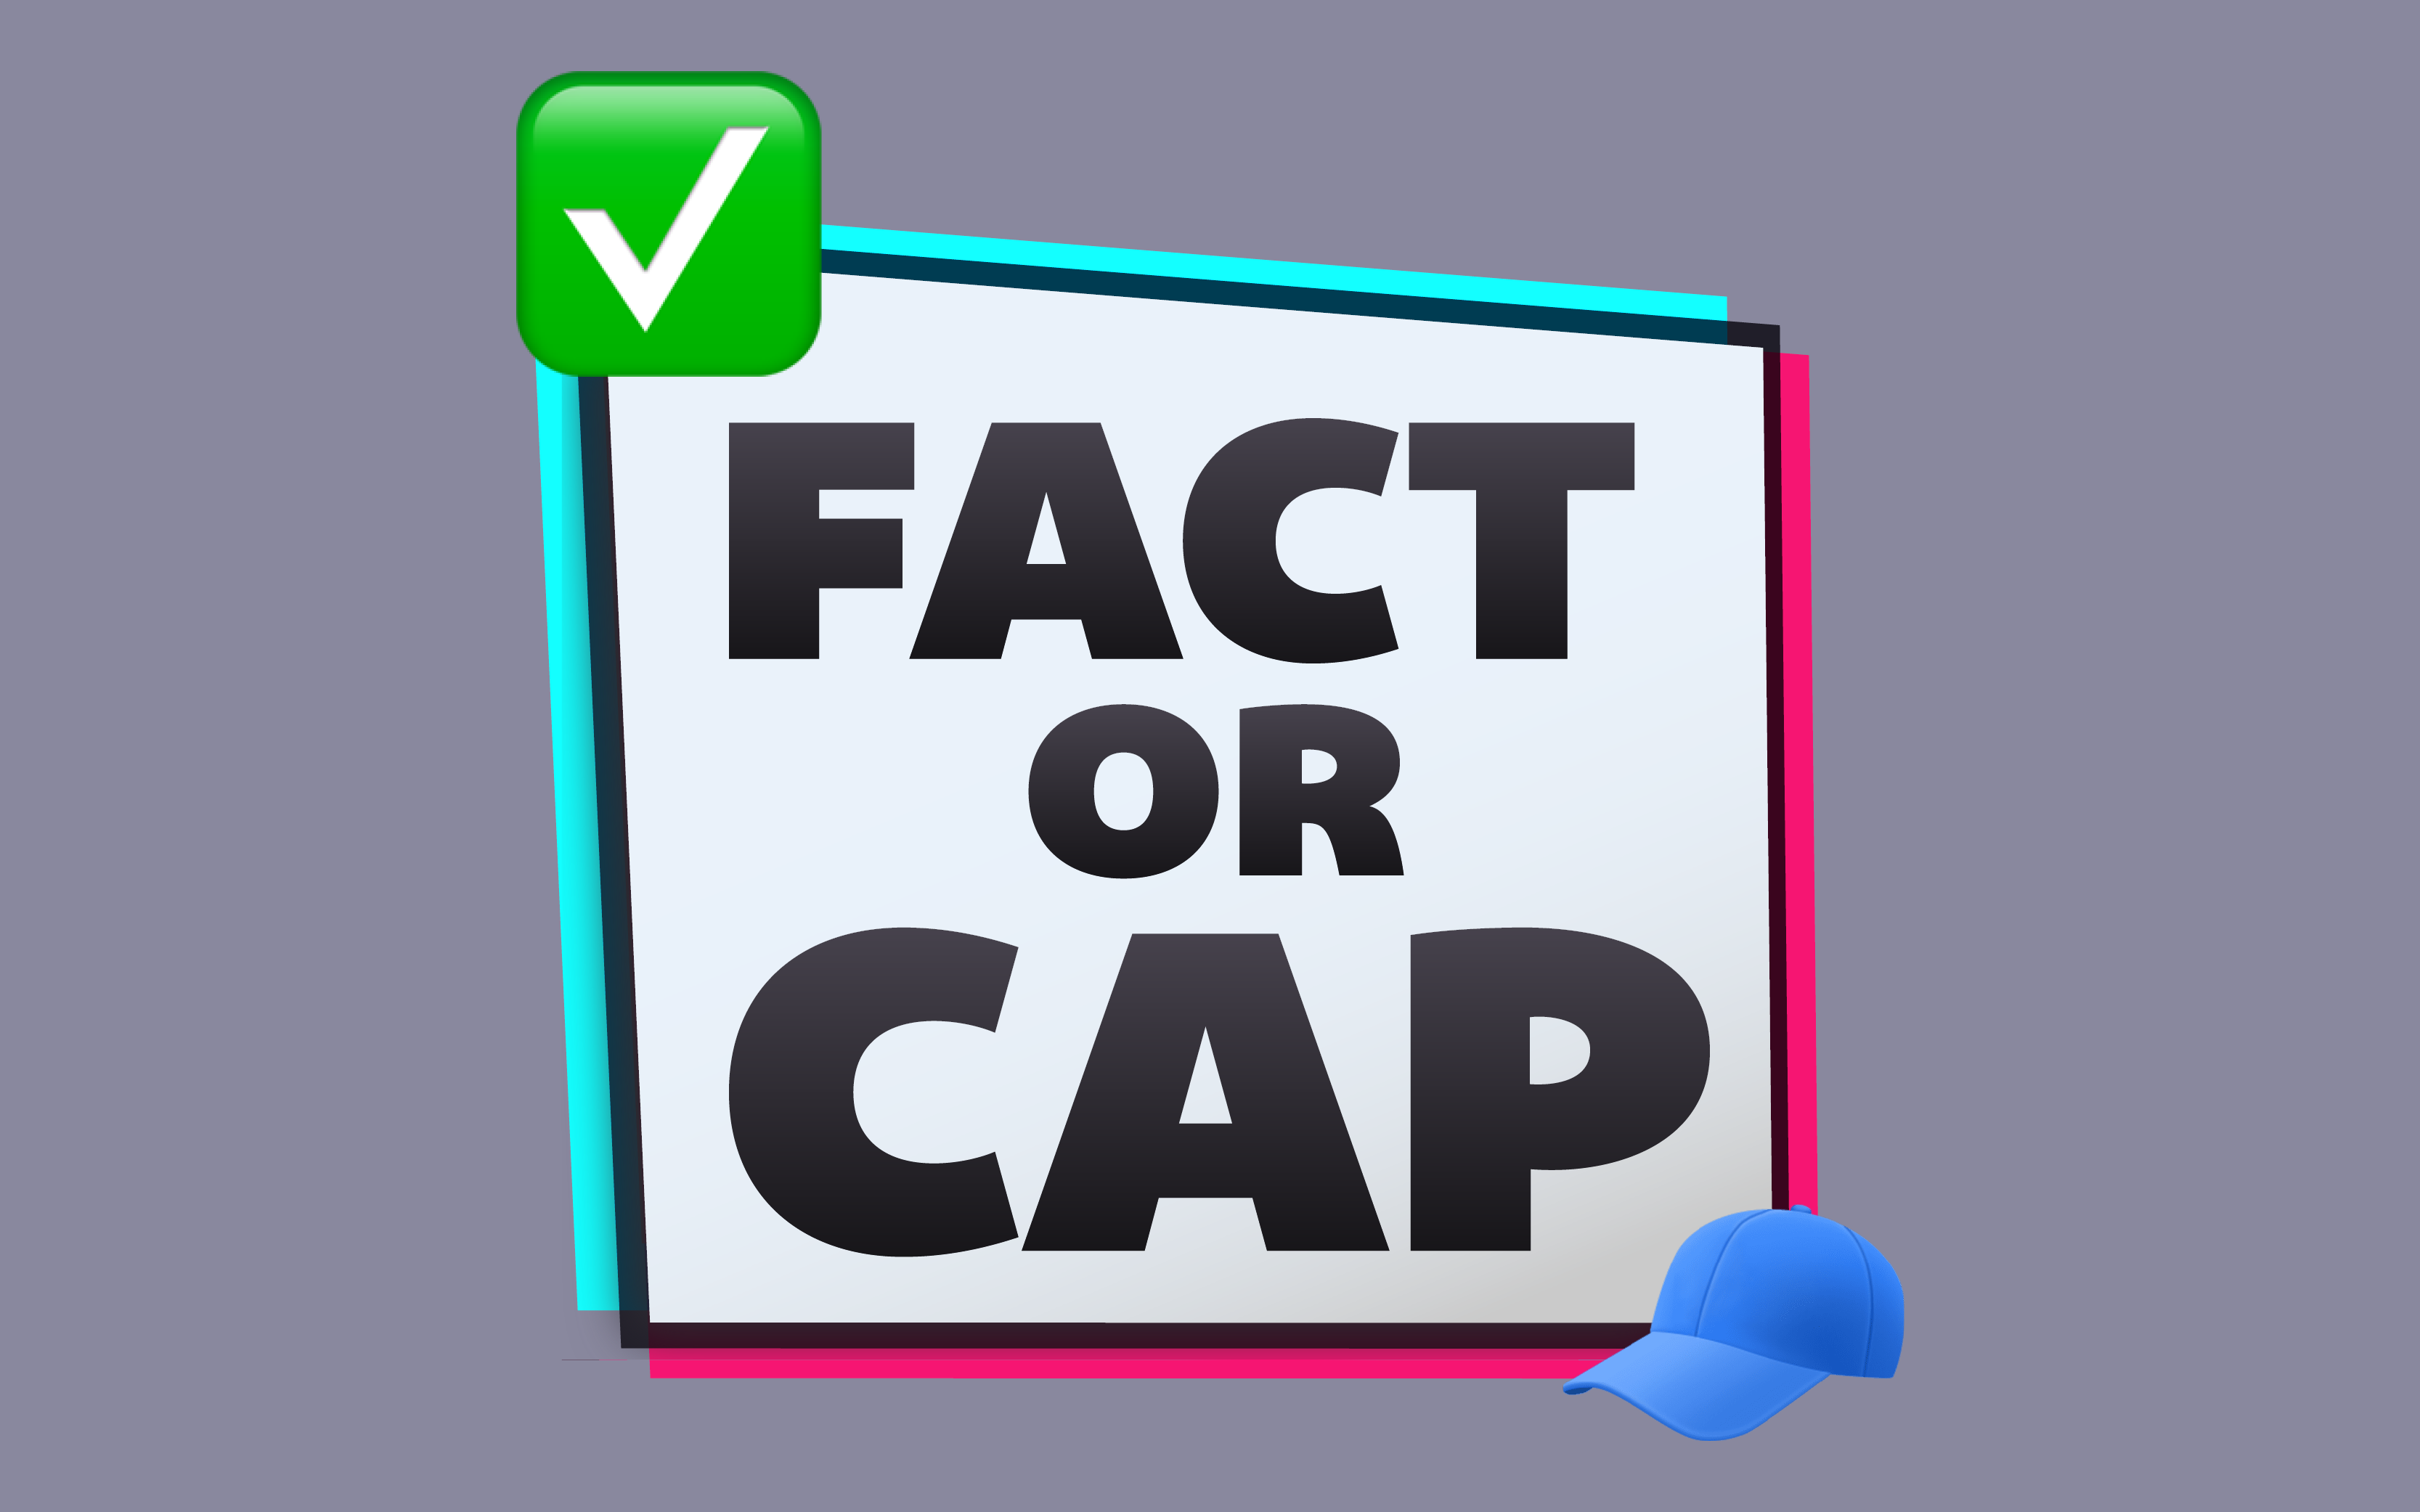 Fact or Cap